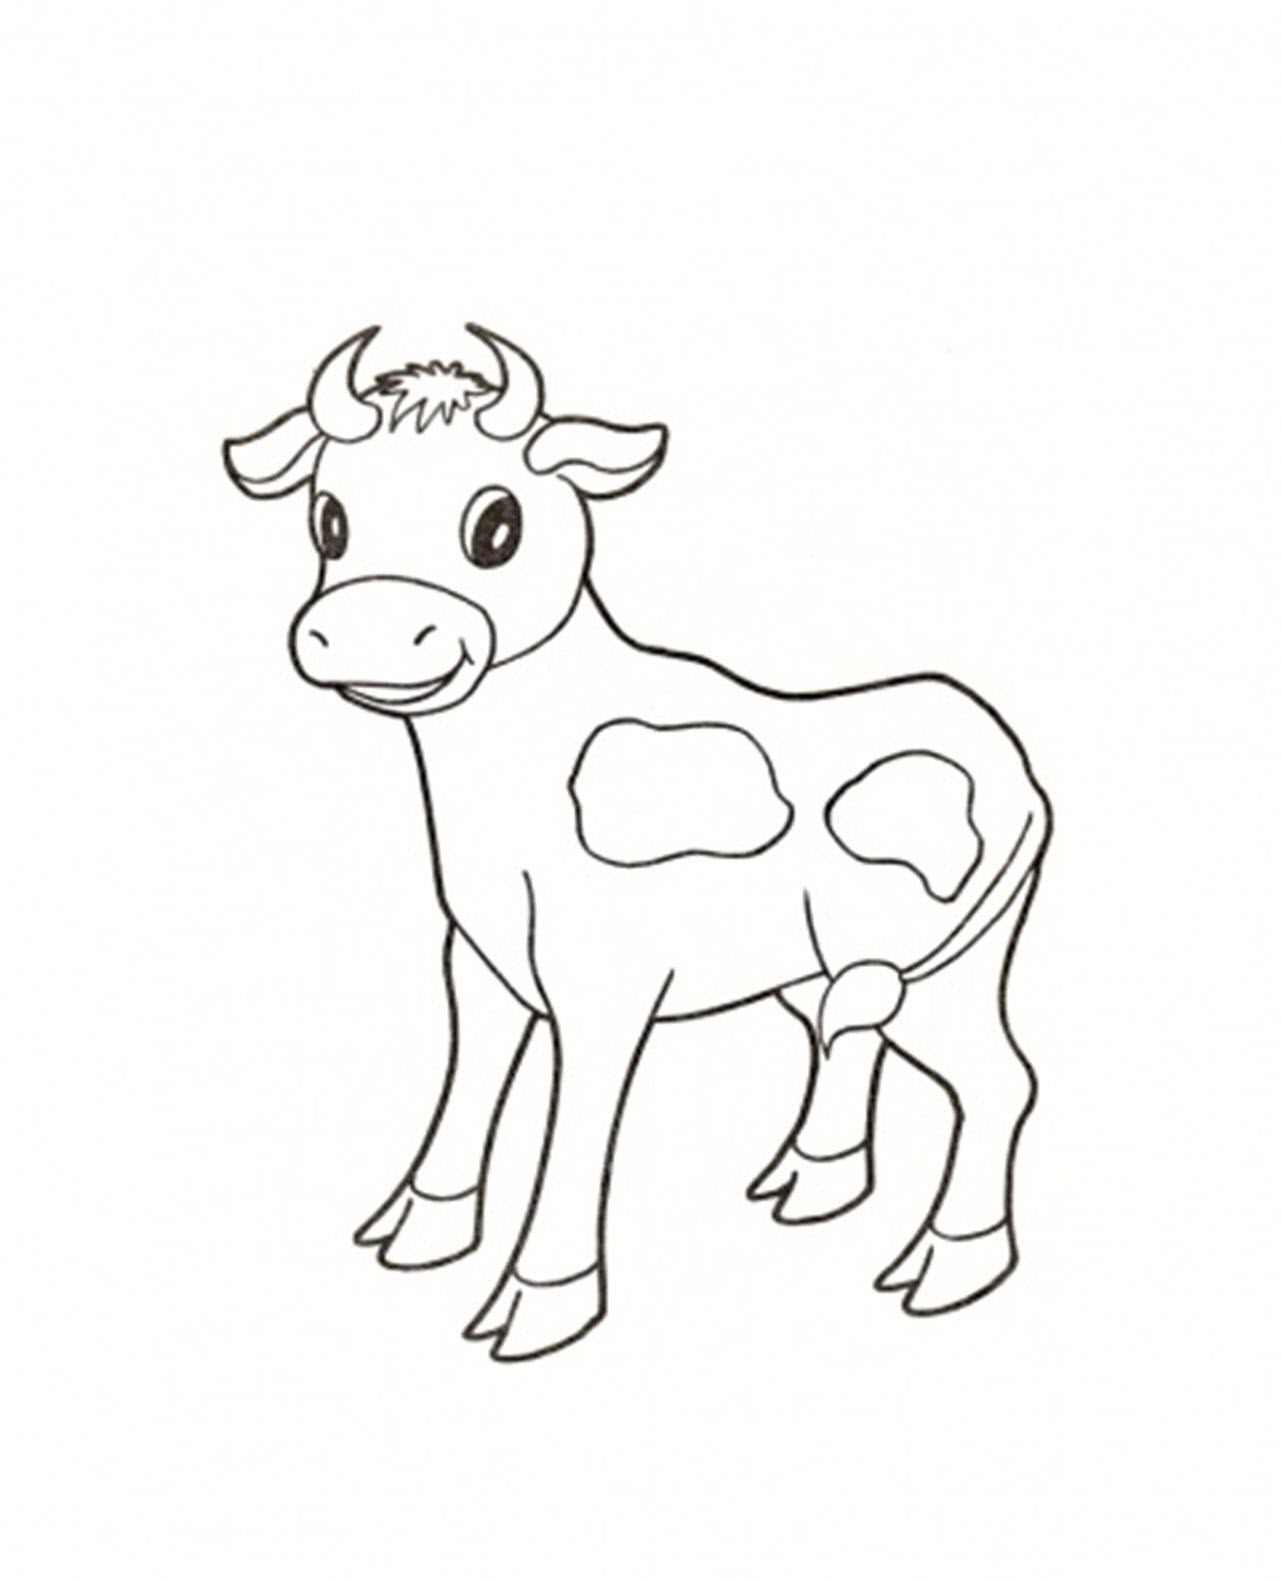 Tuyển tập tranh tô màu con bò đẹp và dễ thương cho bé